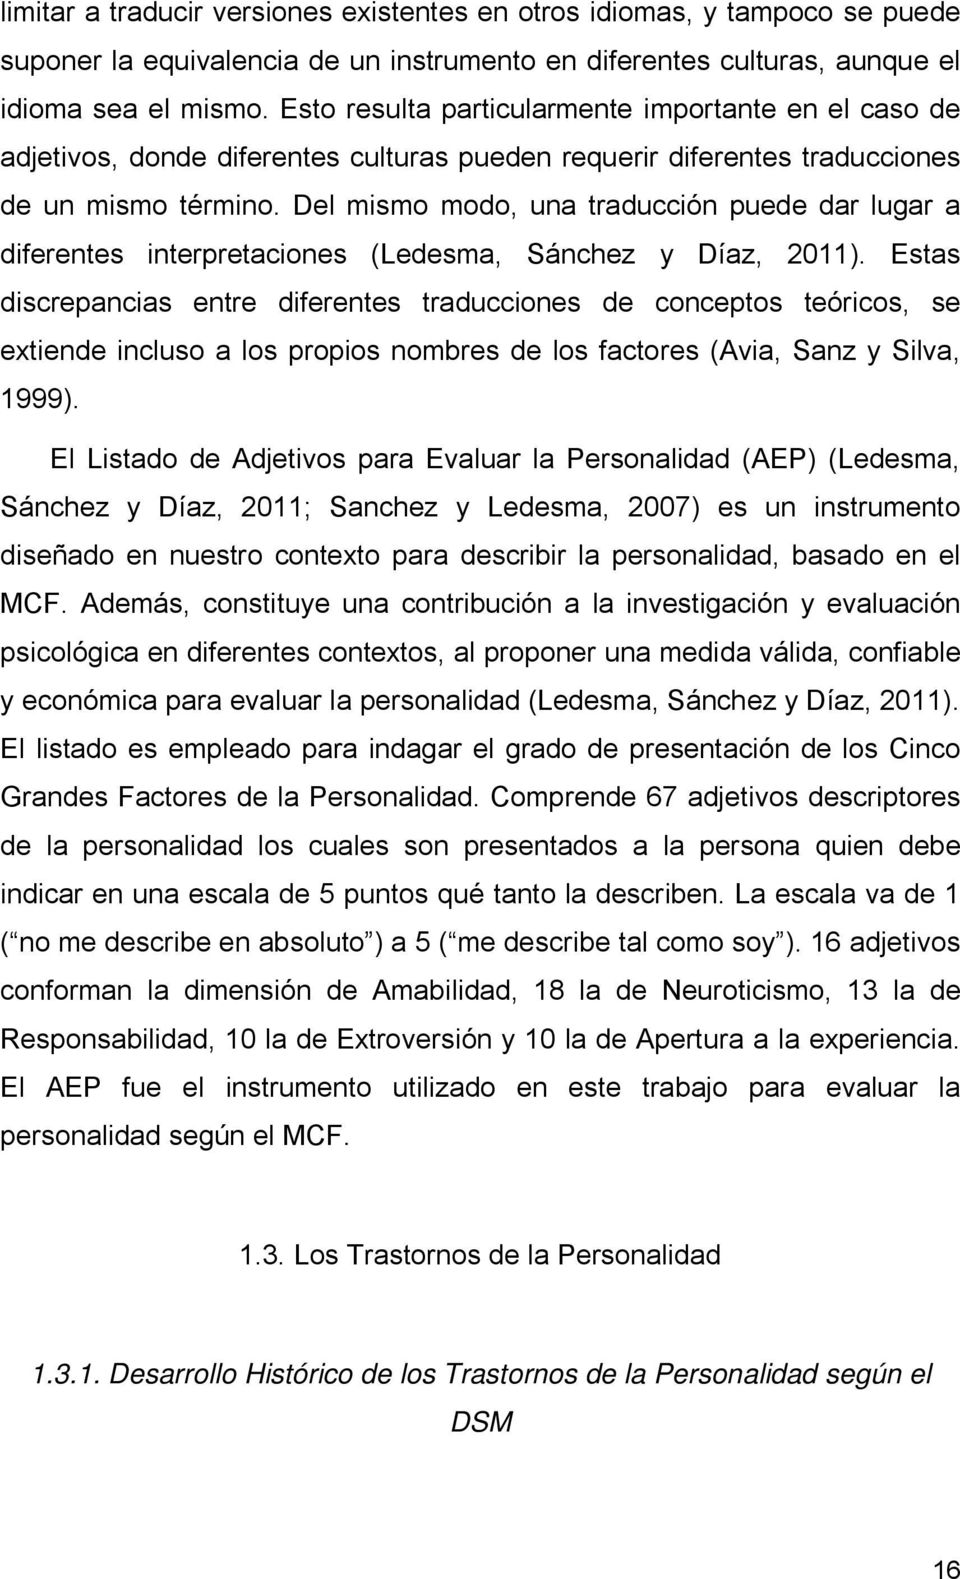 Del mismo modo, una traducción puede dar lugar a diferentes interpretaciones (Ledesma, Sánchez y Díaz, 2011).